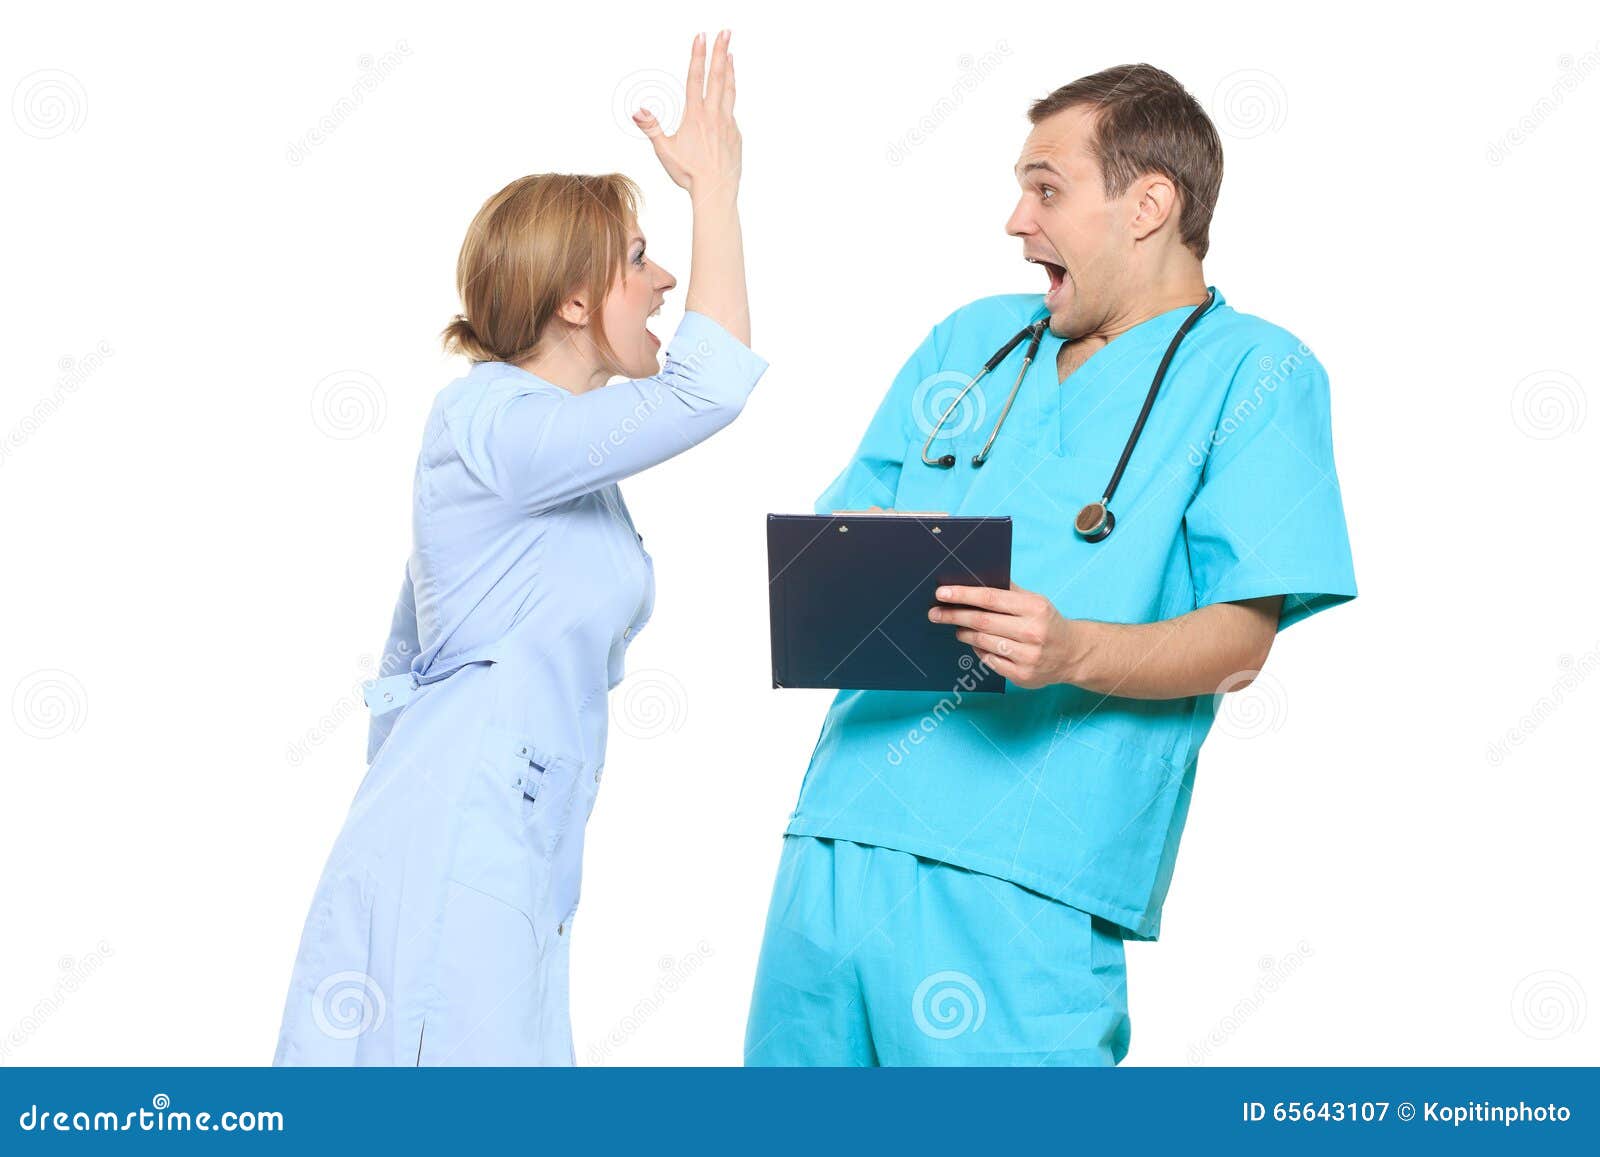 Между врачом и медсестрой